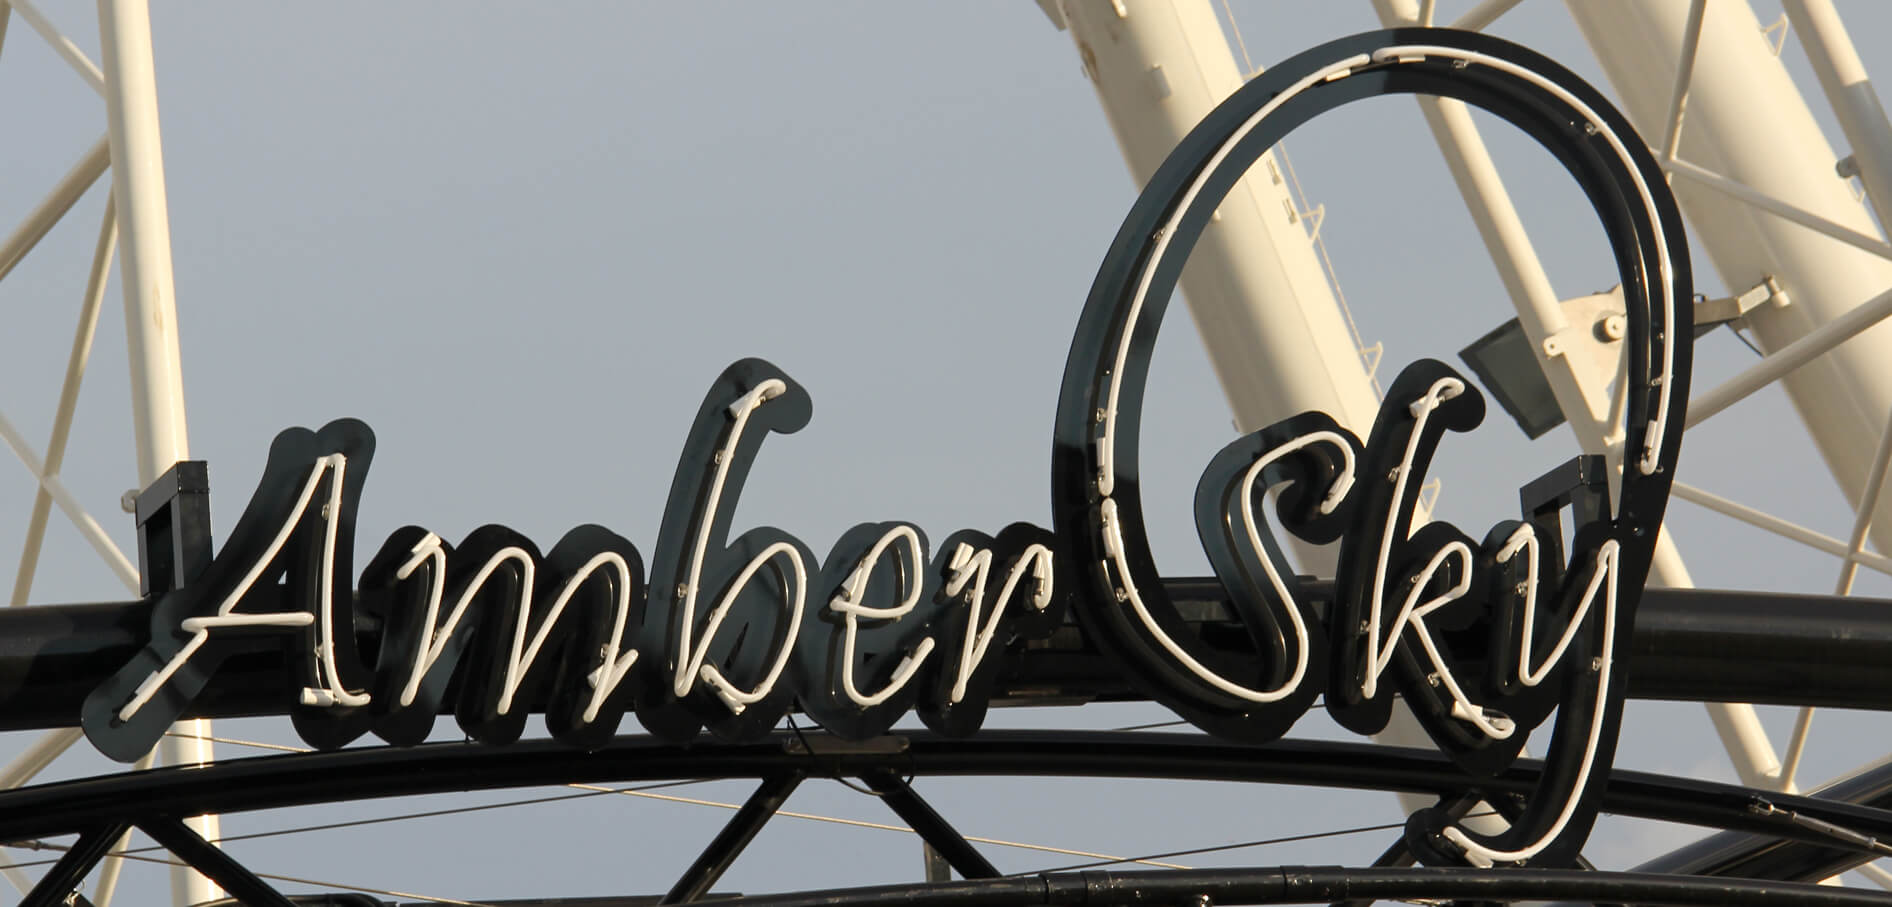 Cielo ámbar - Amber Sky - cartel de neón blanco con el nombre de la empresa colocado en el estante